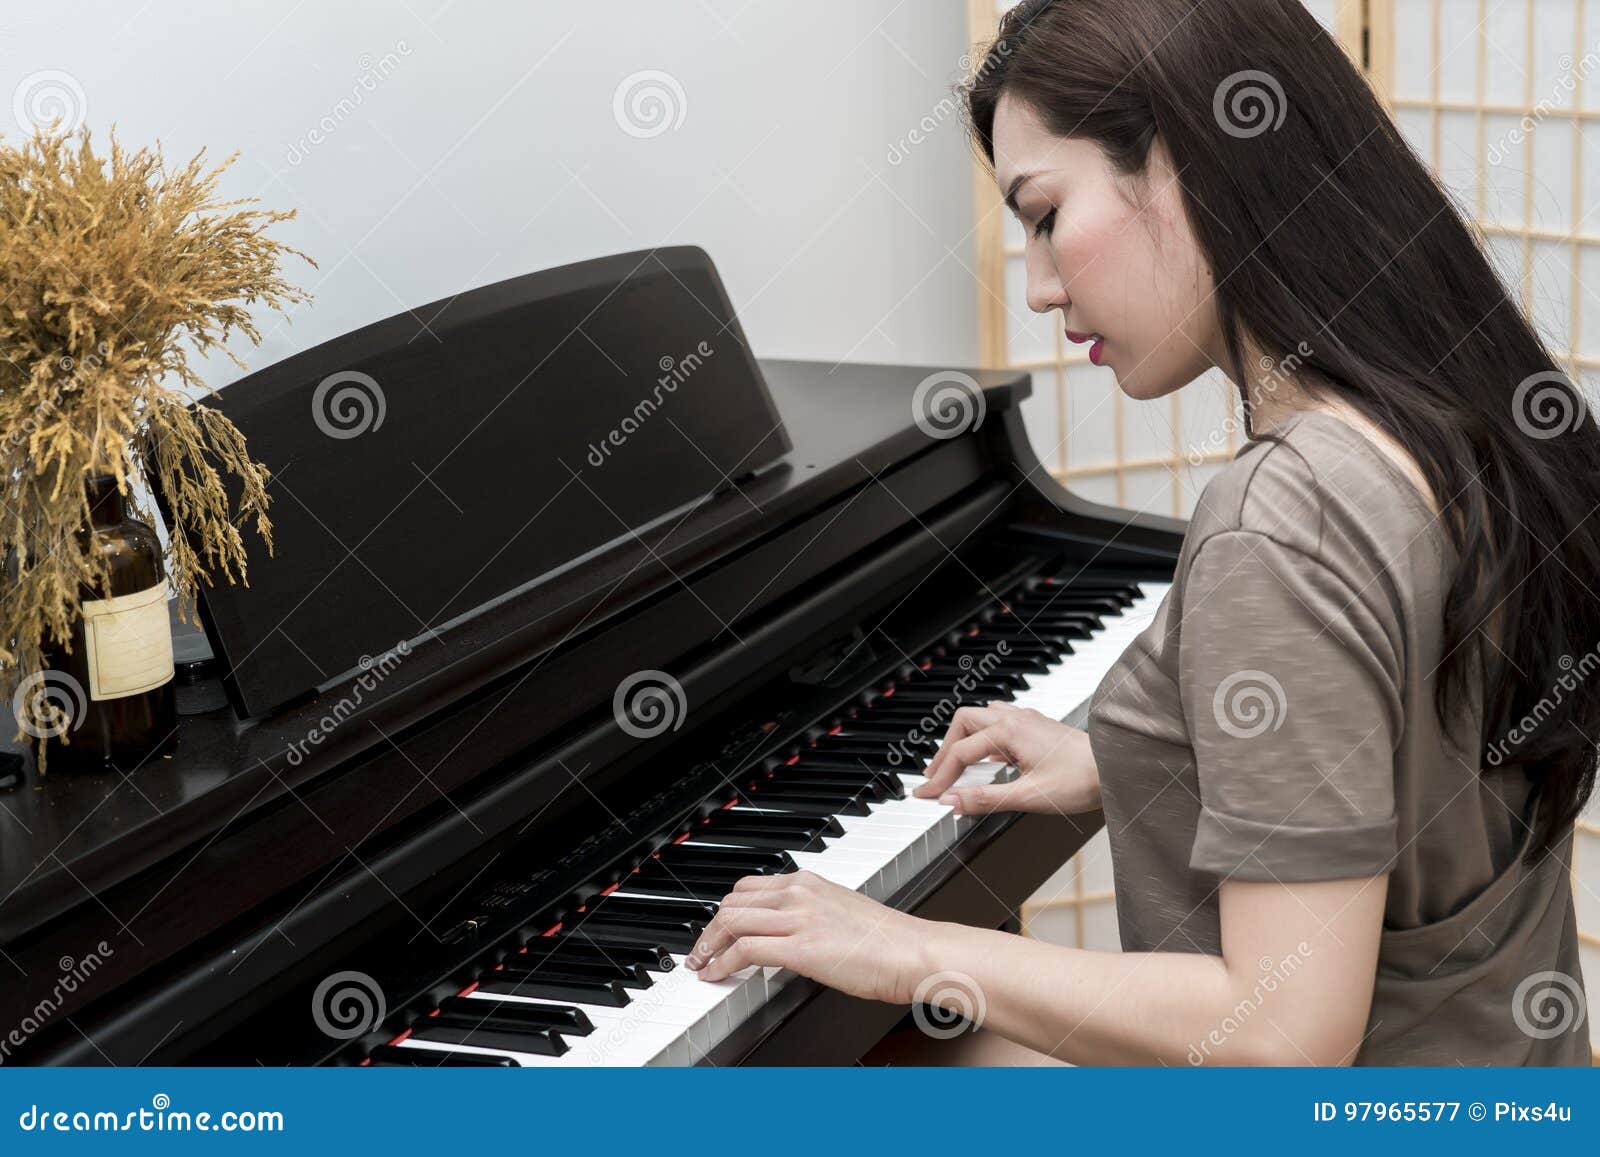 Исполнил на пианино. Девушка играет на фортепиано. Женщина музыкант пианино. Девушка играет на пианино. Женщина играет на рояле.